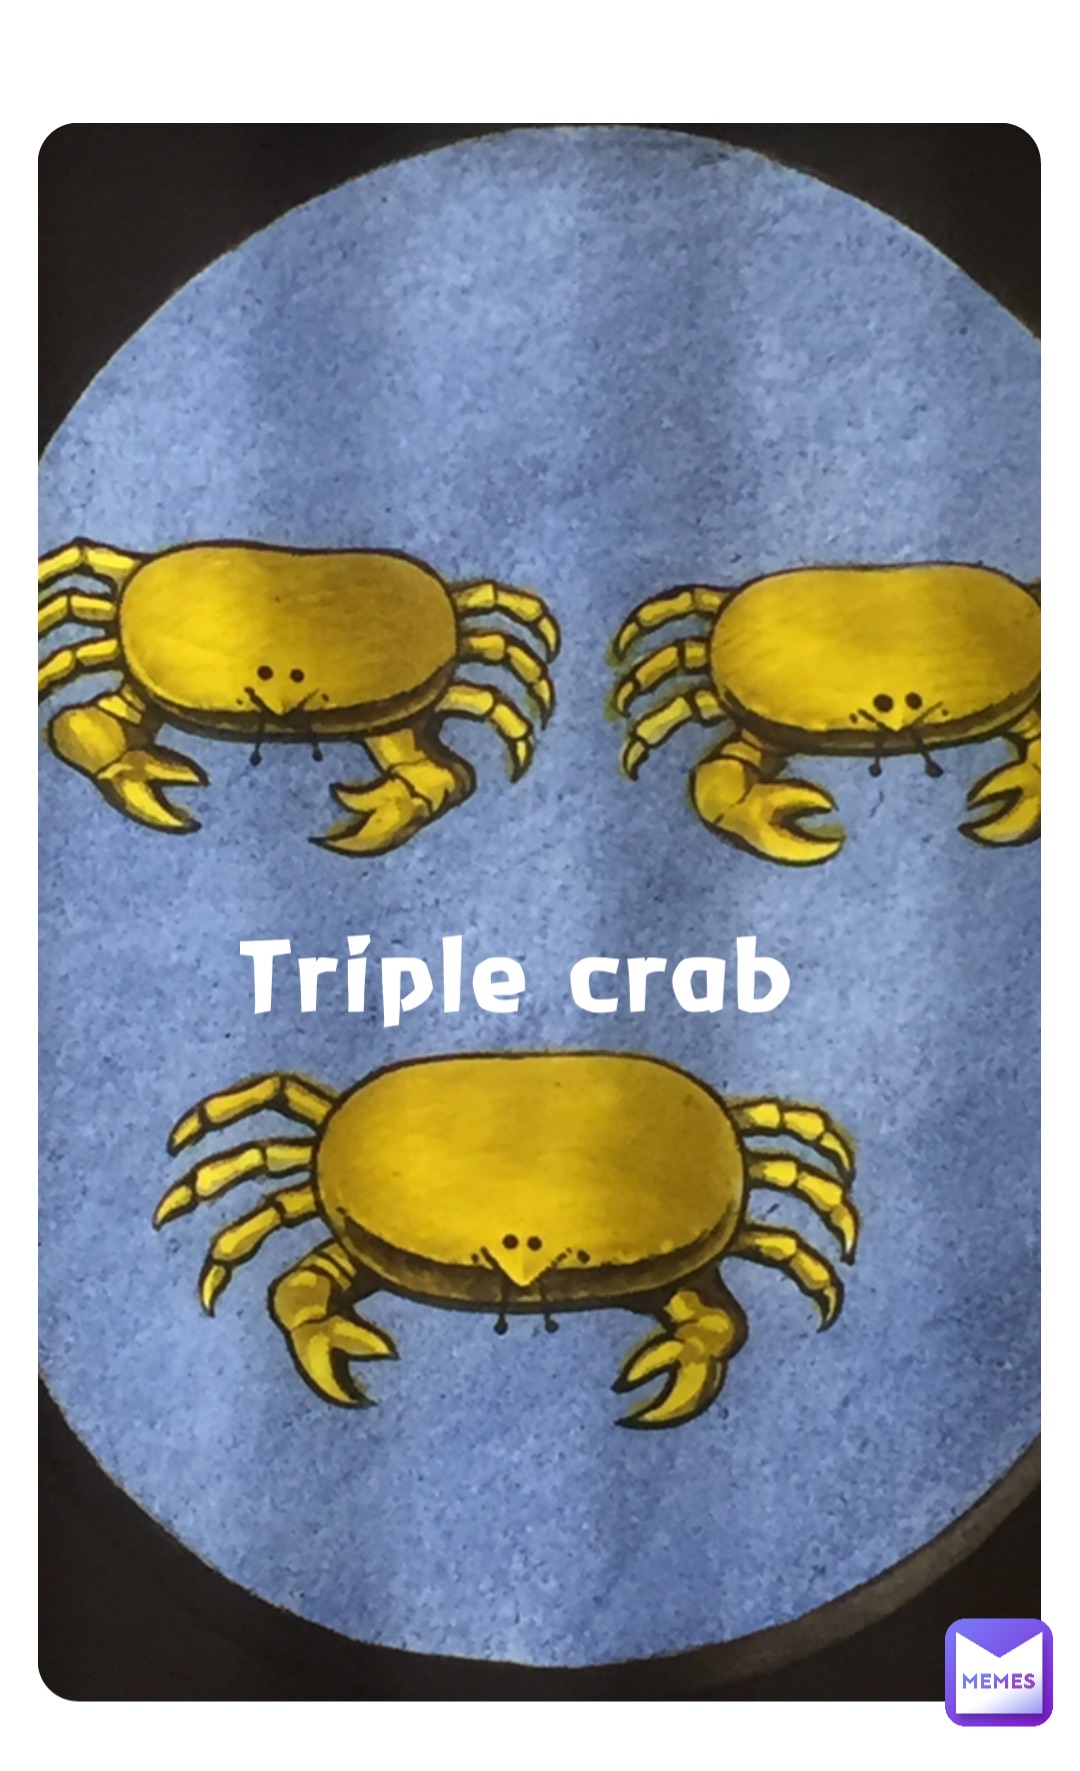 Triple crab